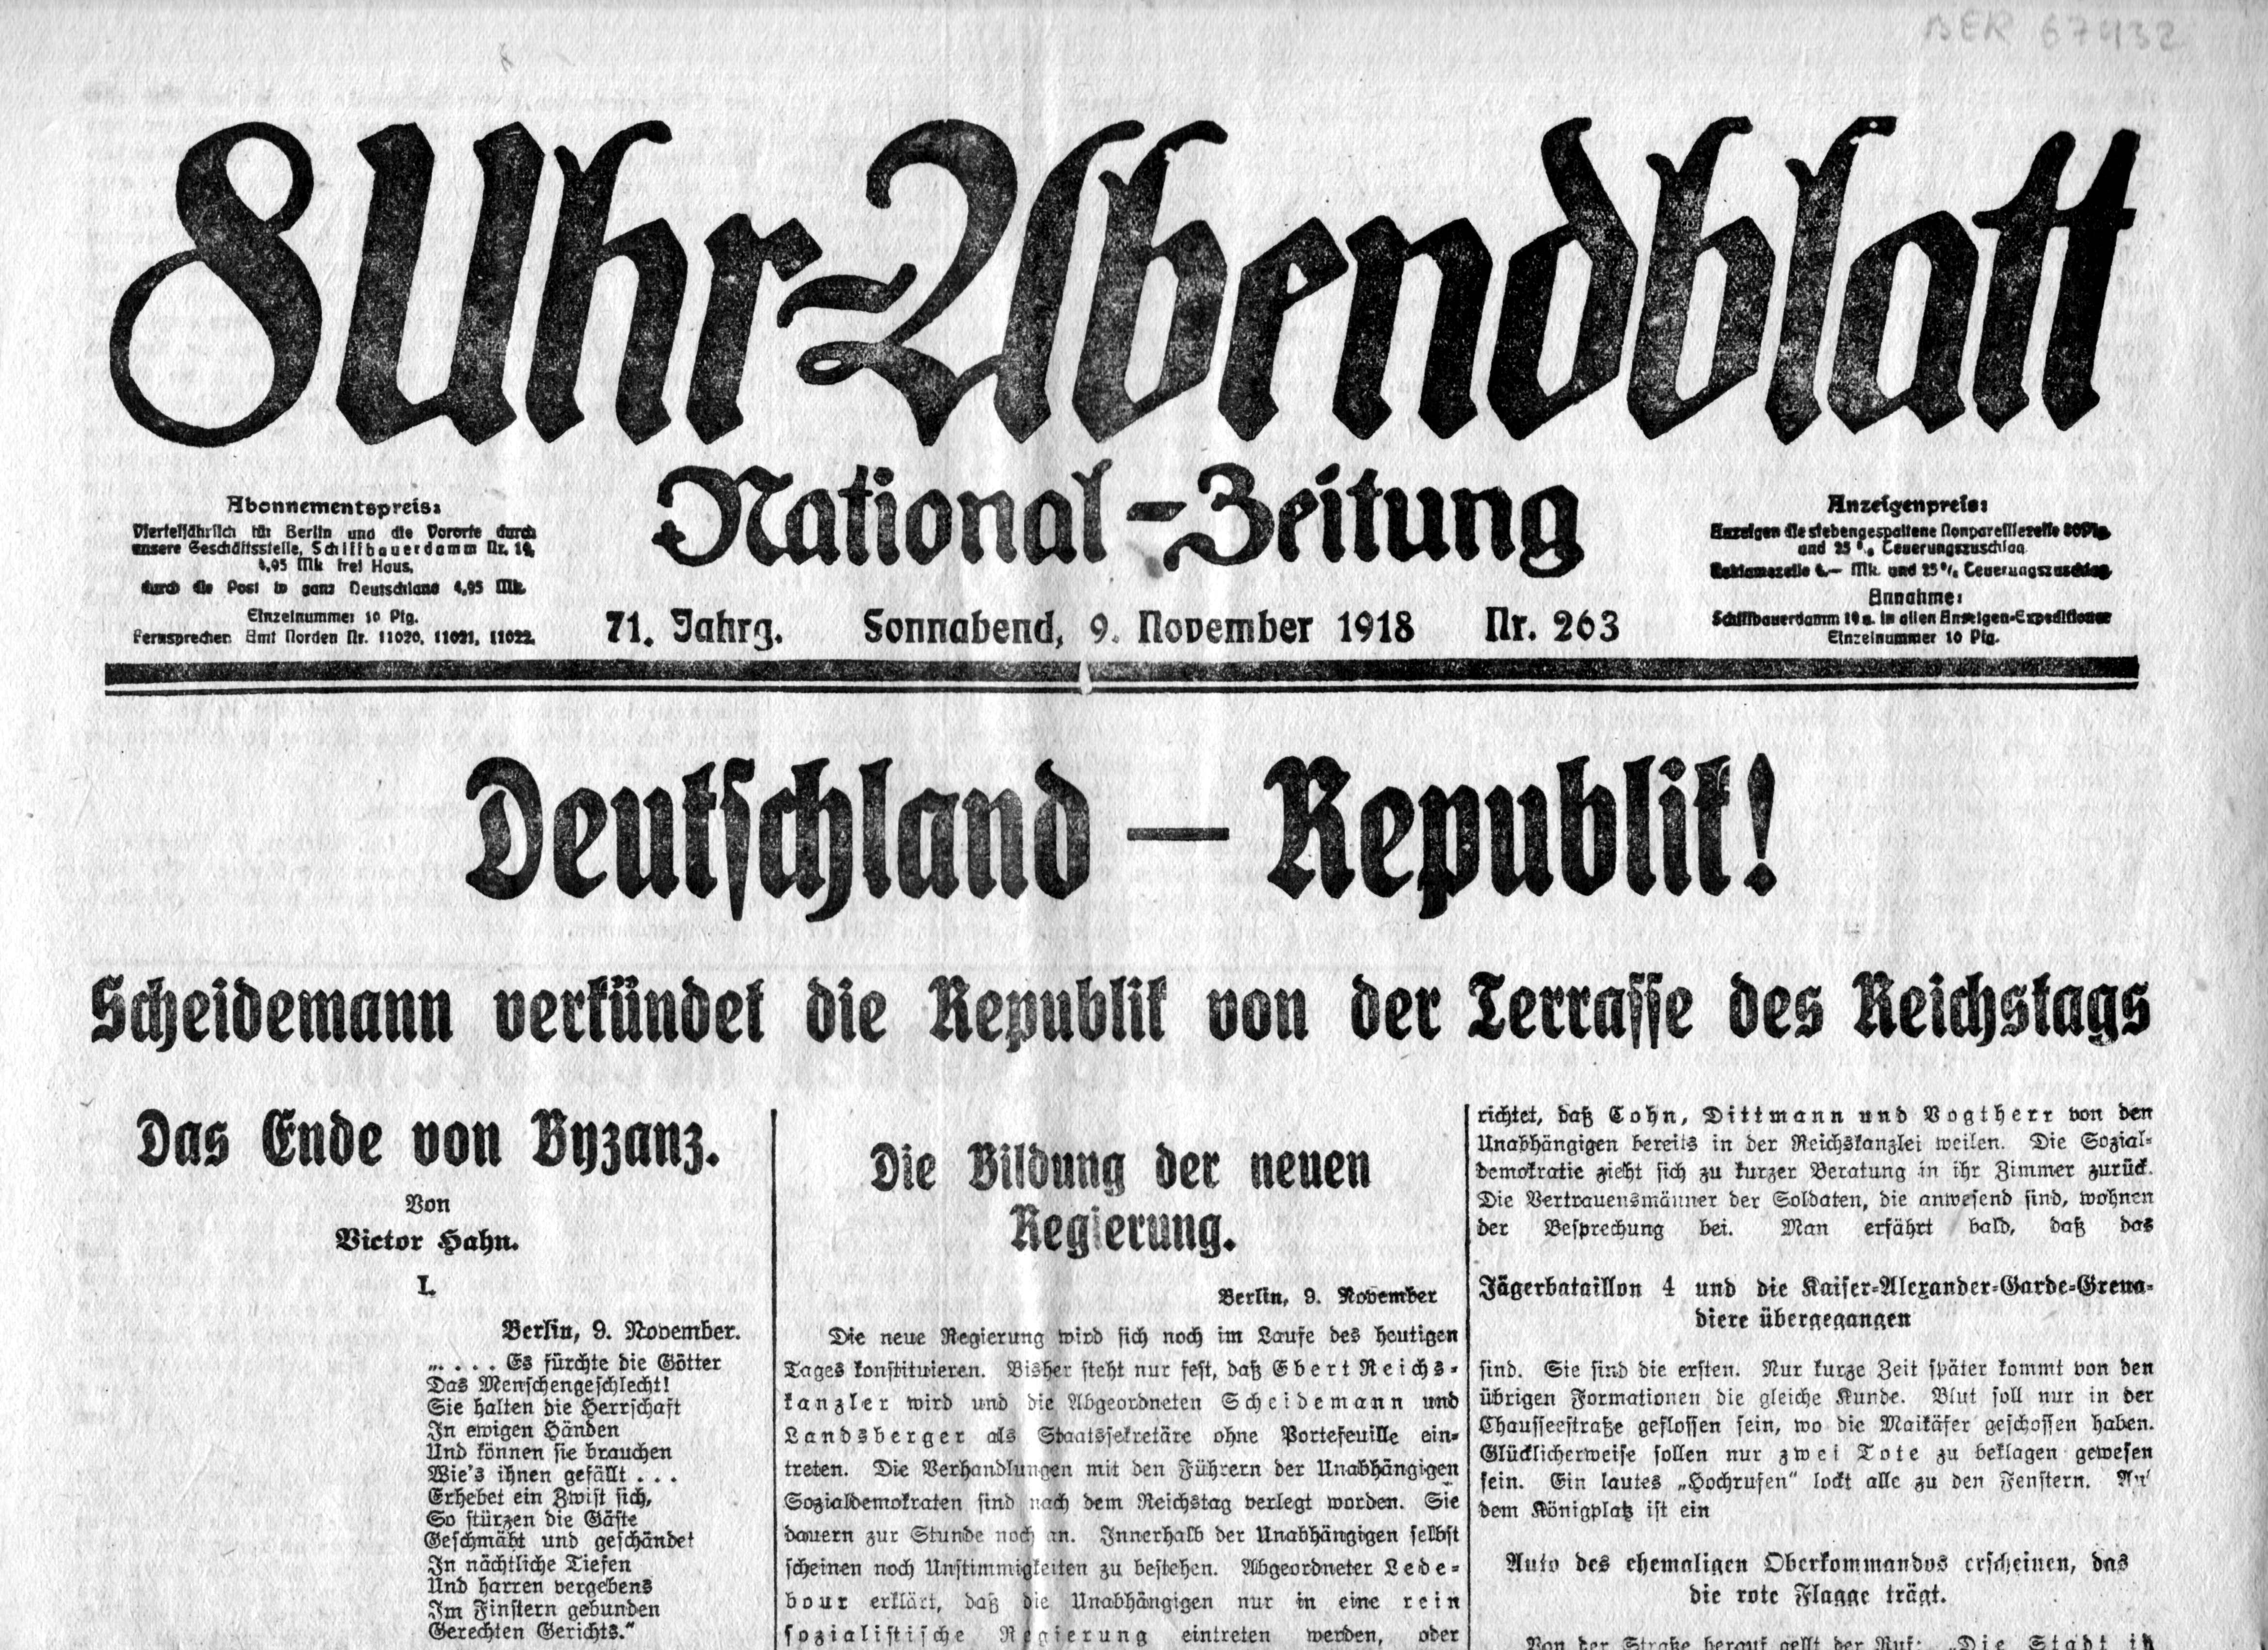 8 Uhr Abendblatt National-Zeitung , 71. Jg. Nr. 263 vom Sonnabend, dem 9. November 1918 (Schloß Wernigerode GmbH RR-F)